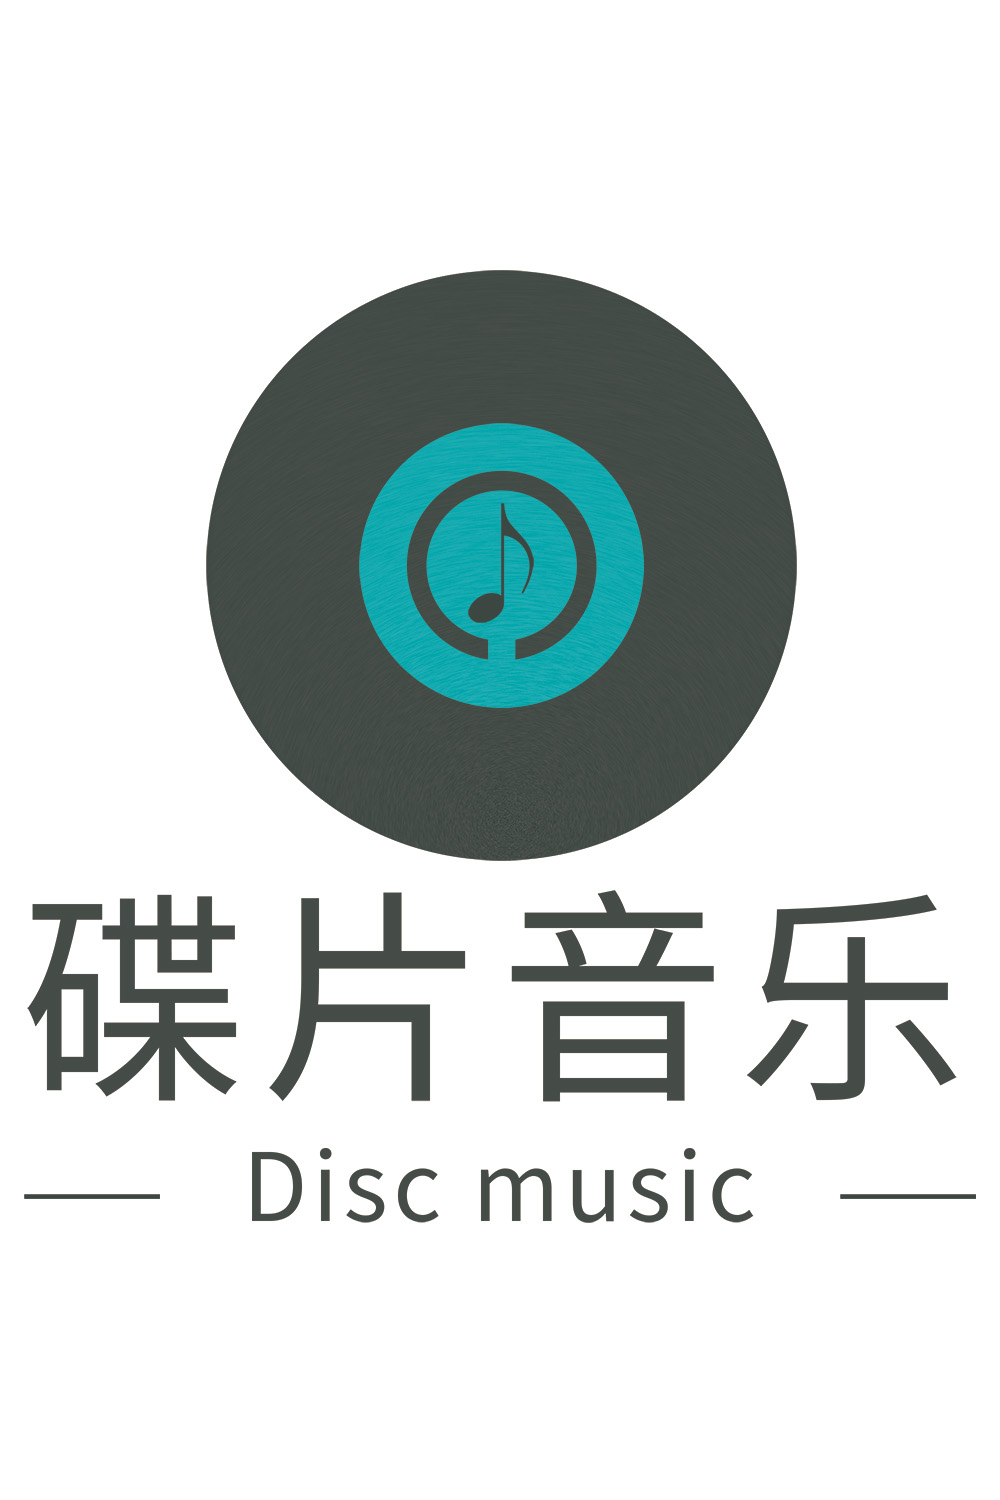 復古音樂行業logo